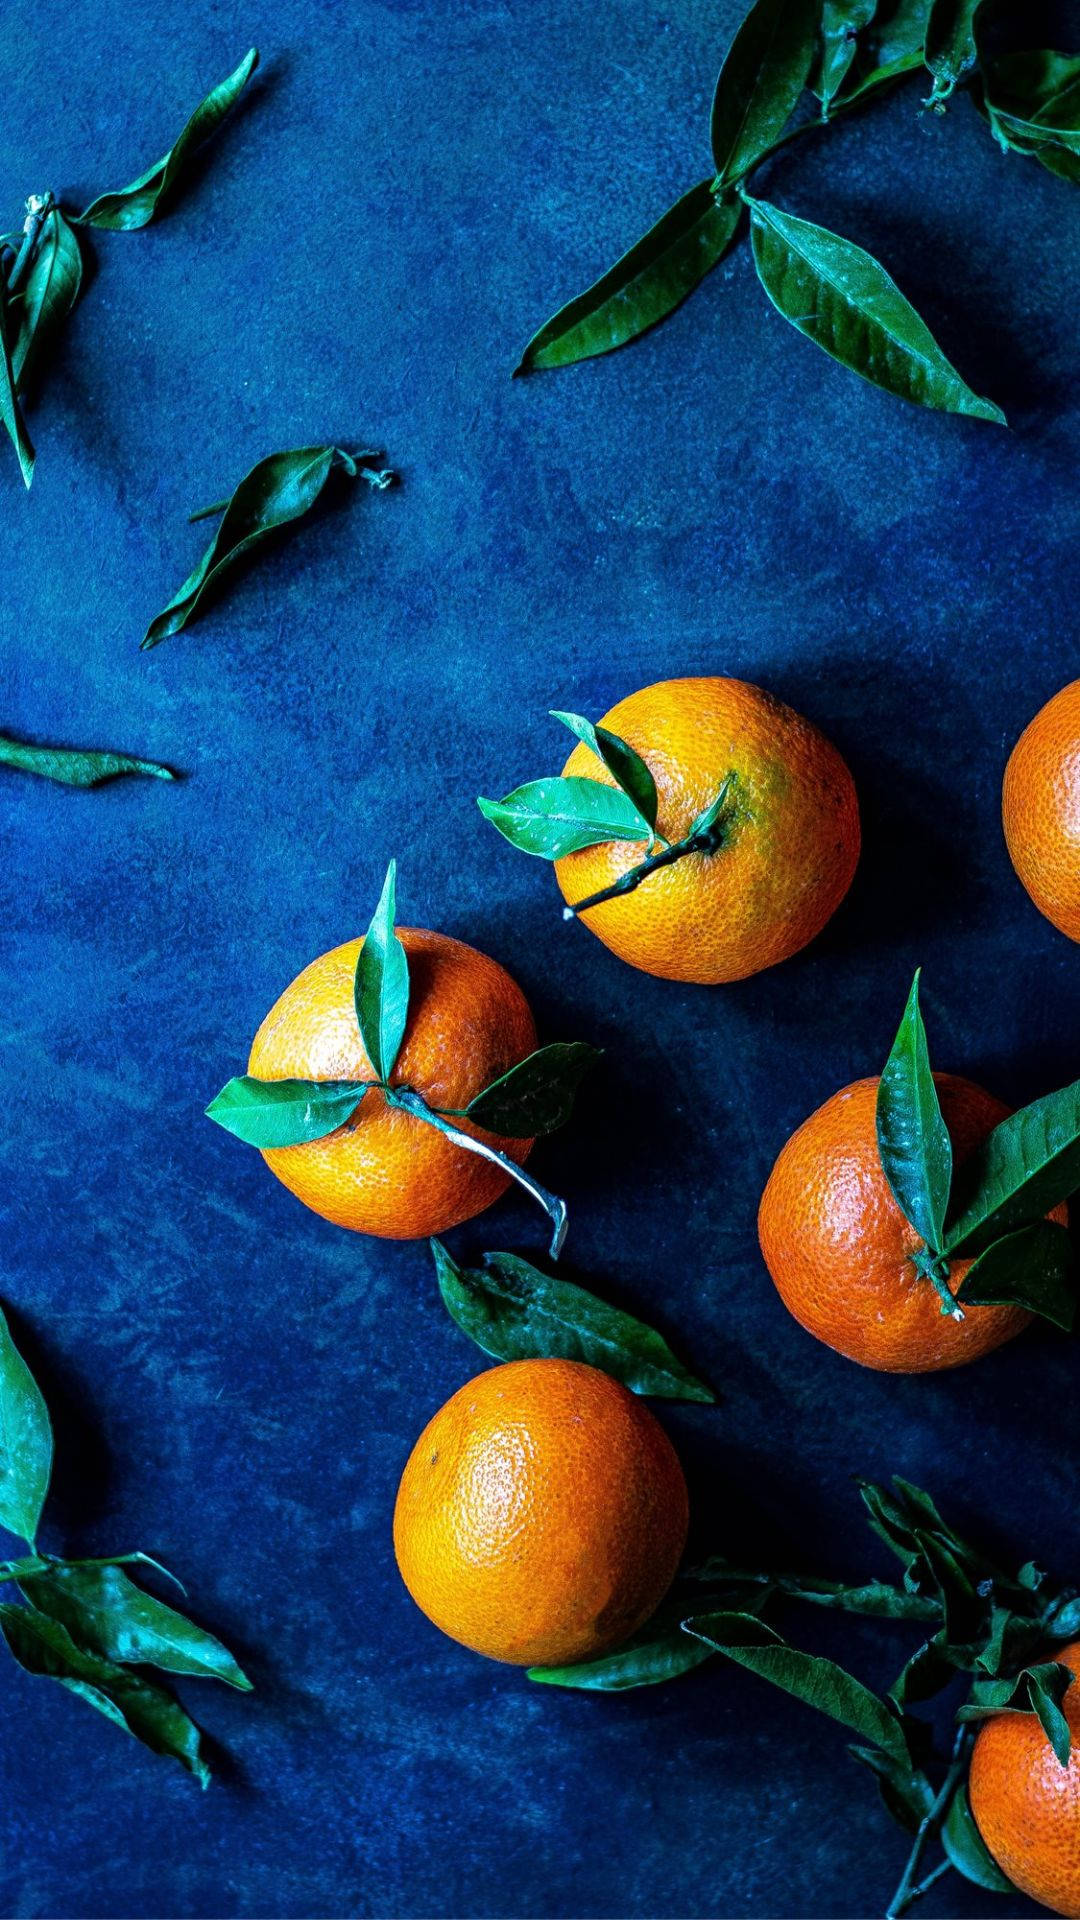 Orange Fruits On Blue Mat Background